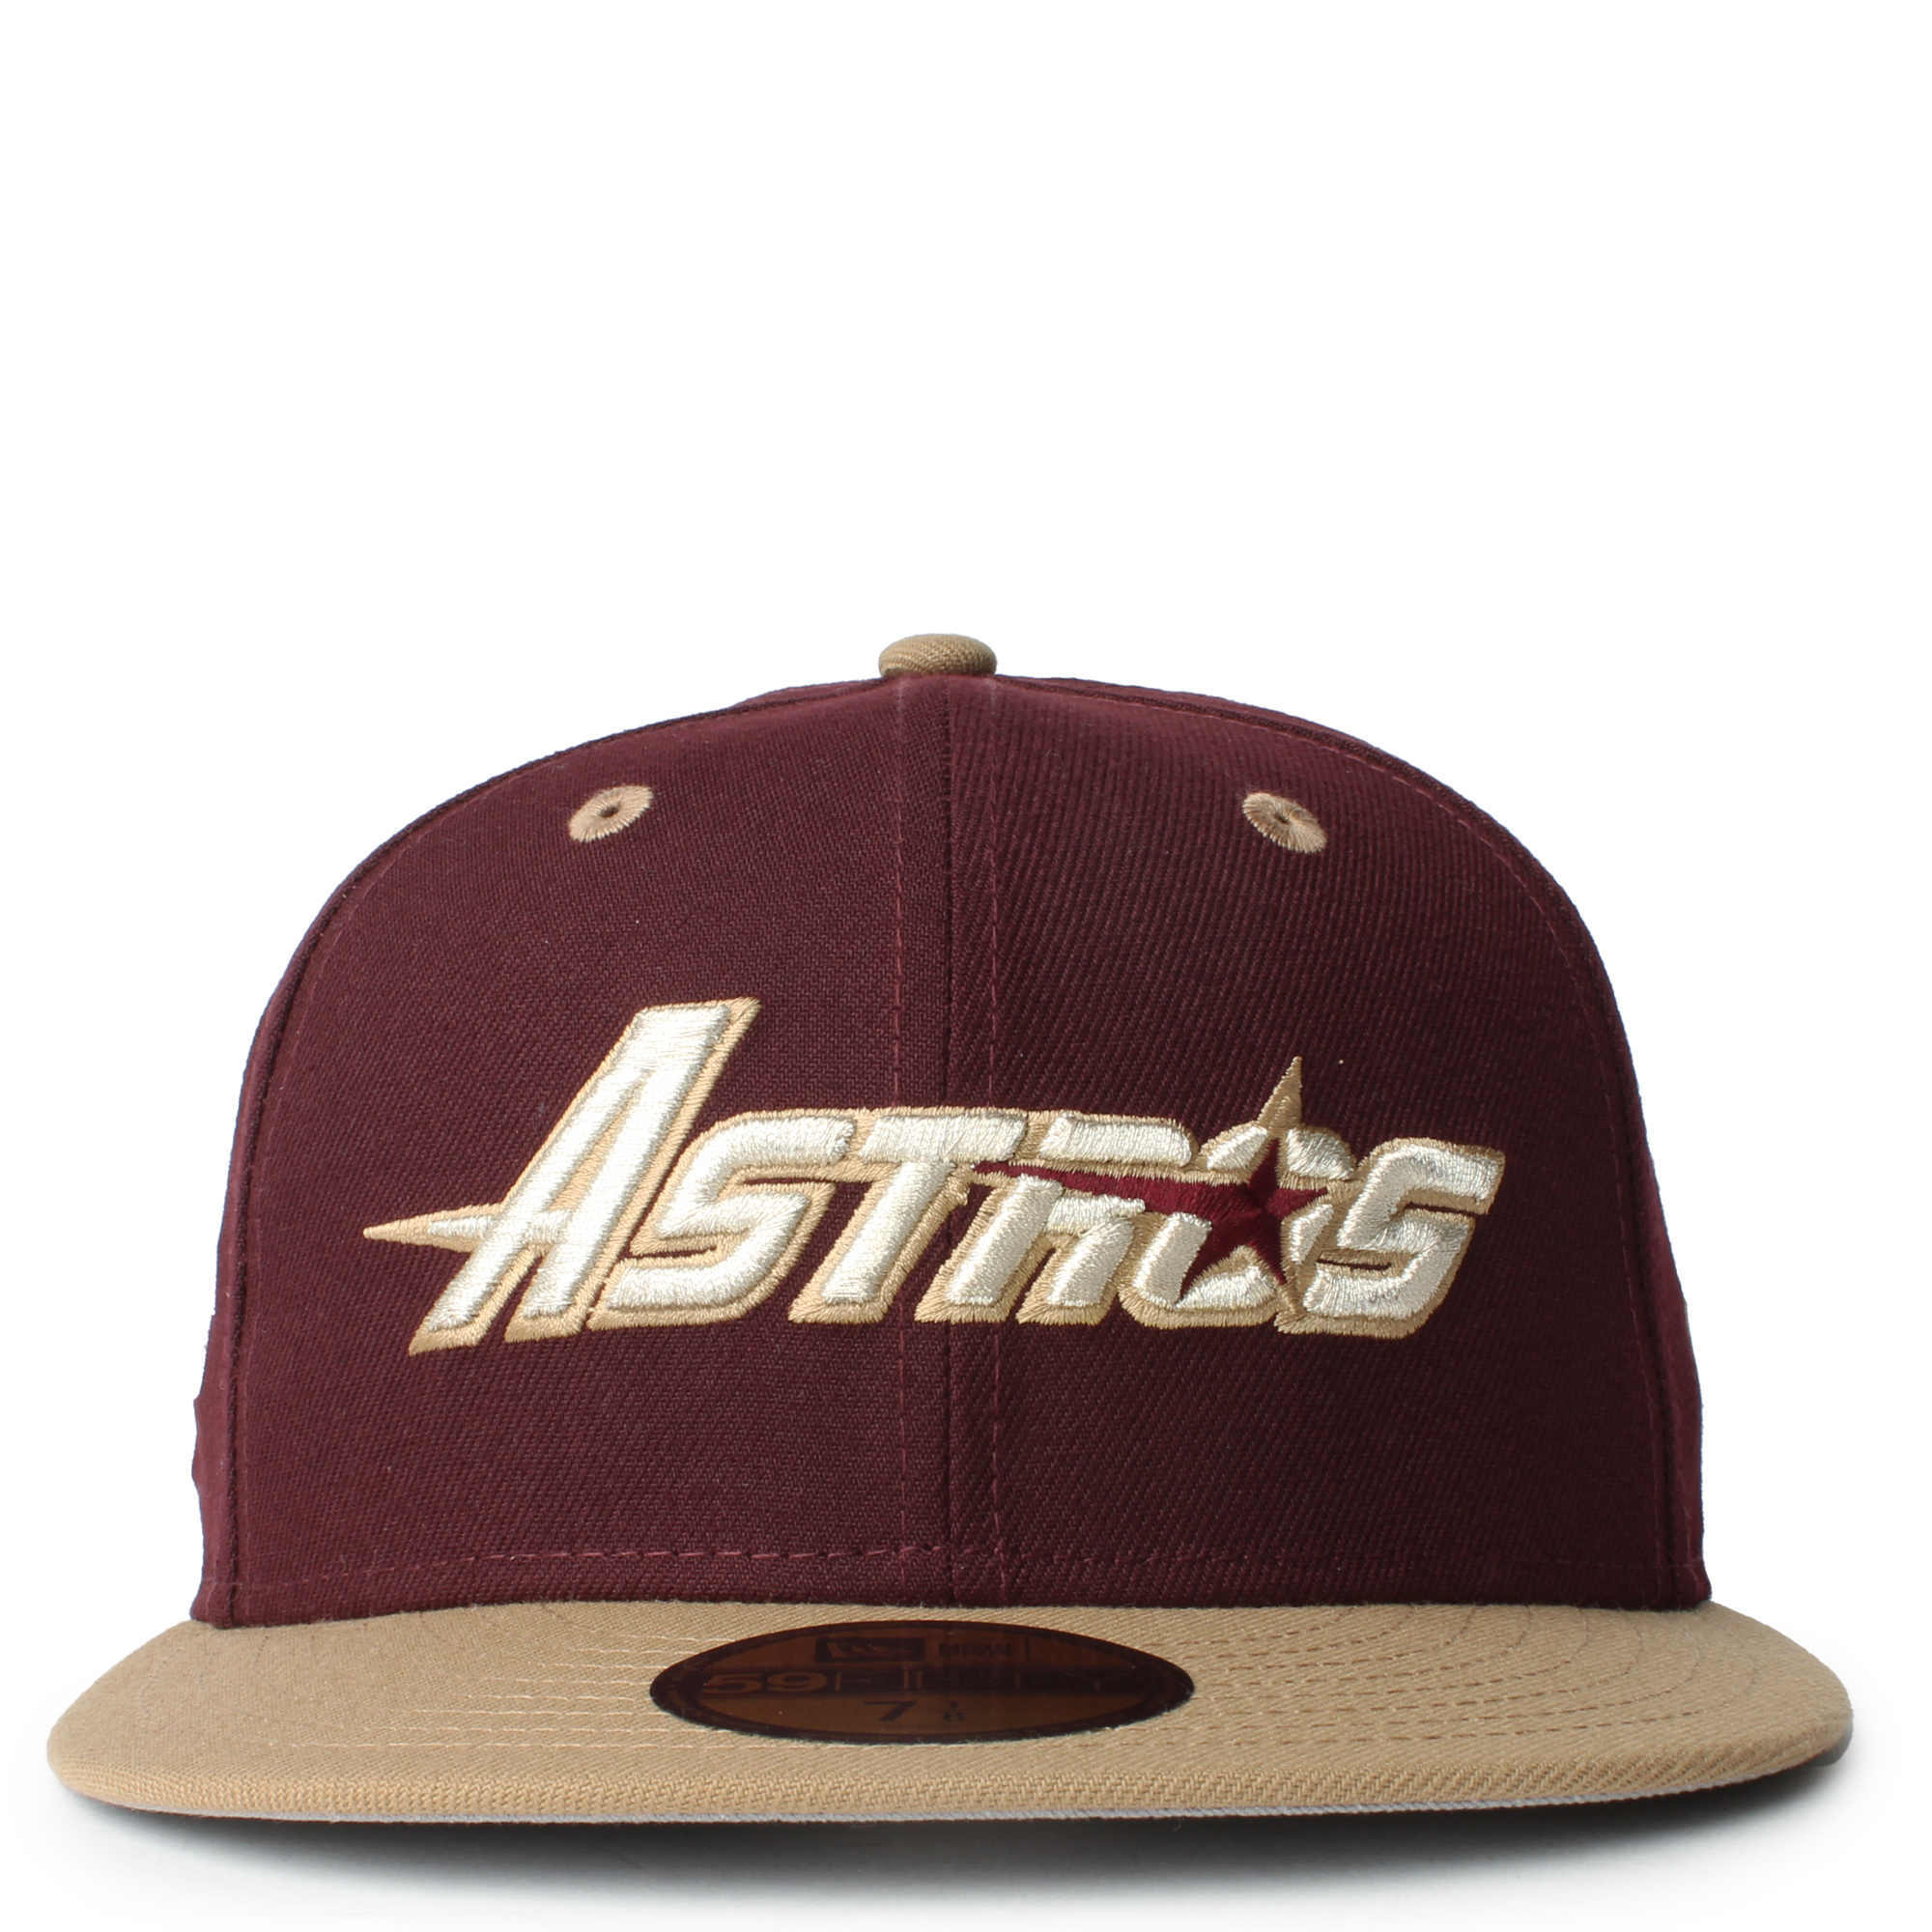 New Era, Accessories, Houston Astros World Series Hat 29